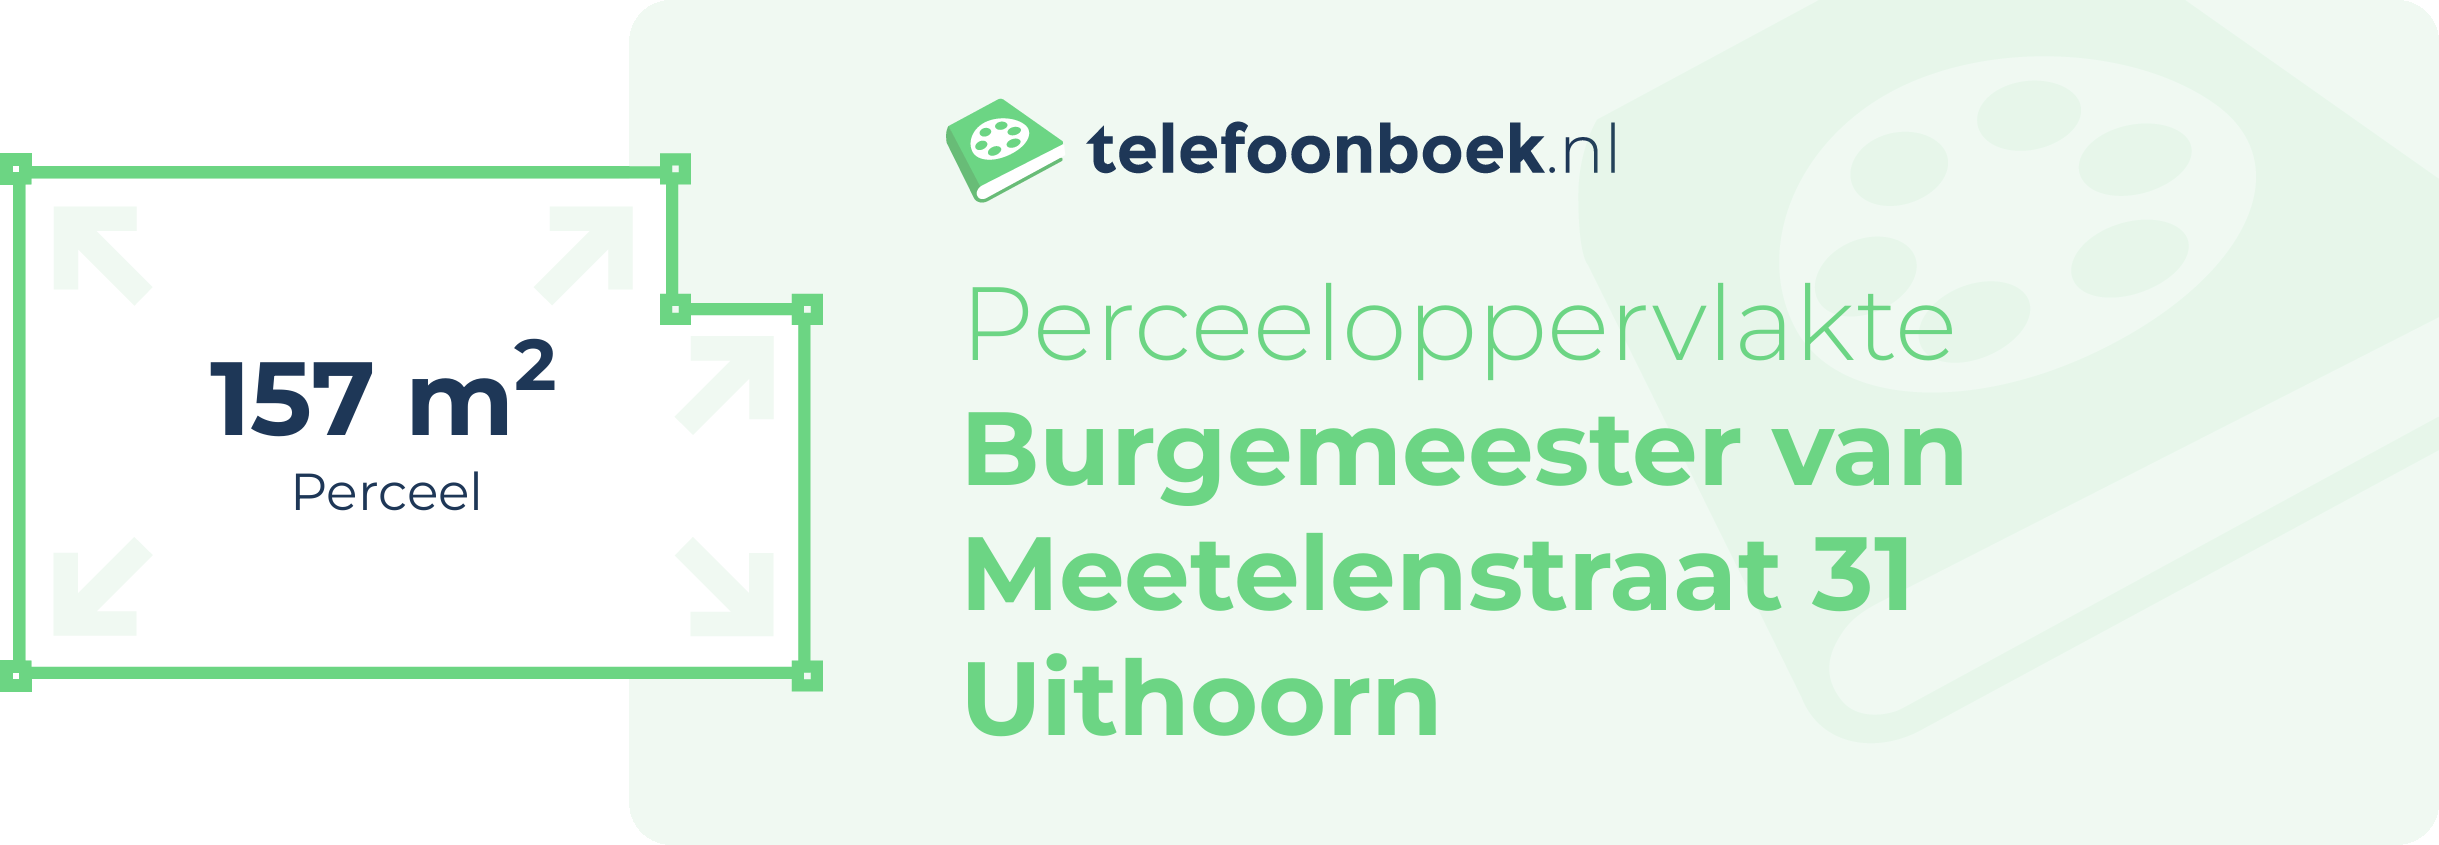 Perceeloppervlakte Burgemeester Van Meetelenstraat 31 Uithoorn